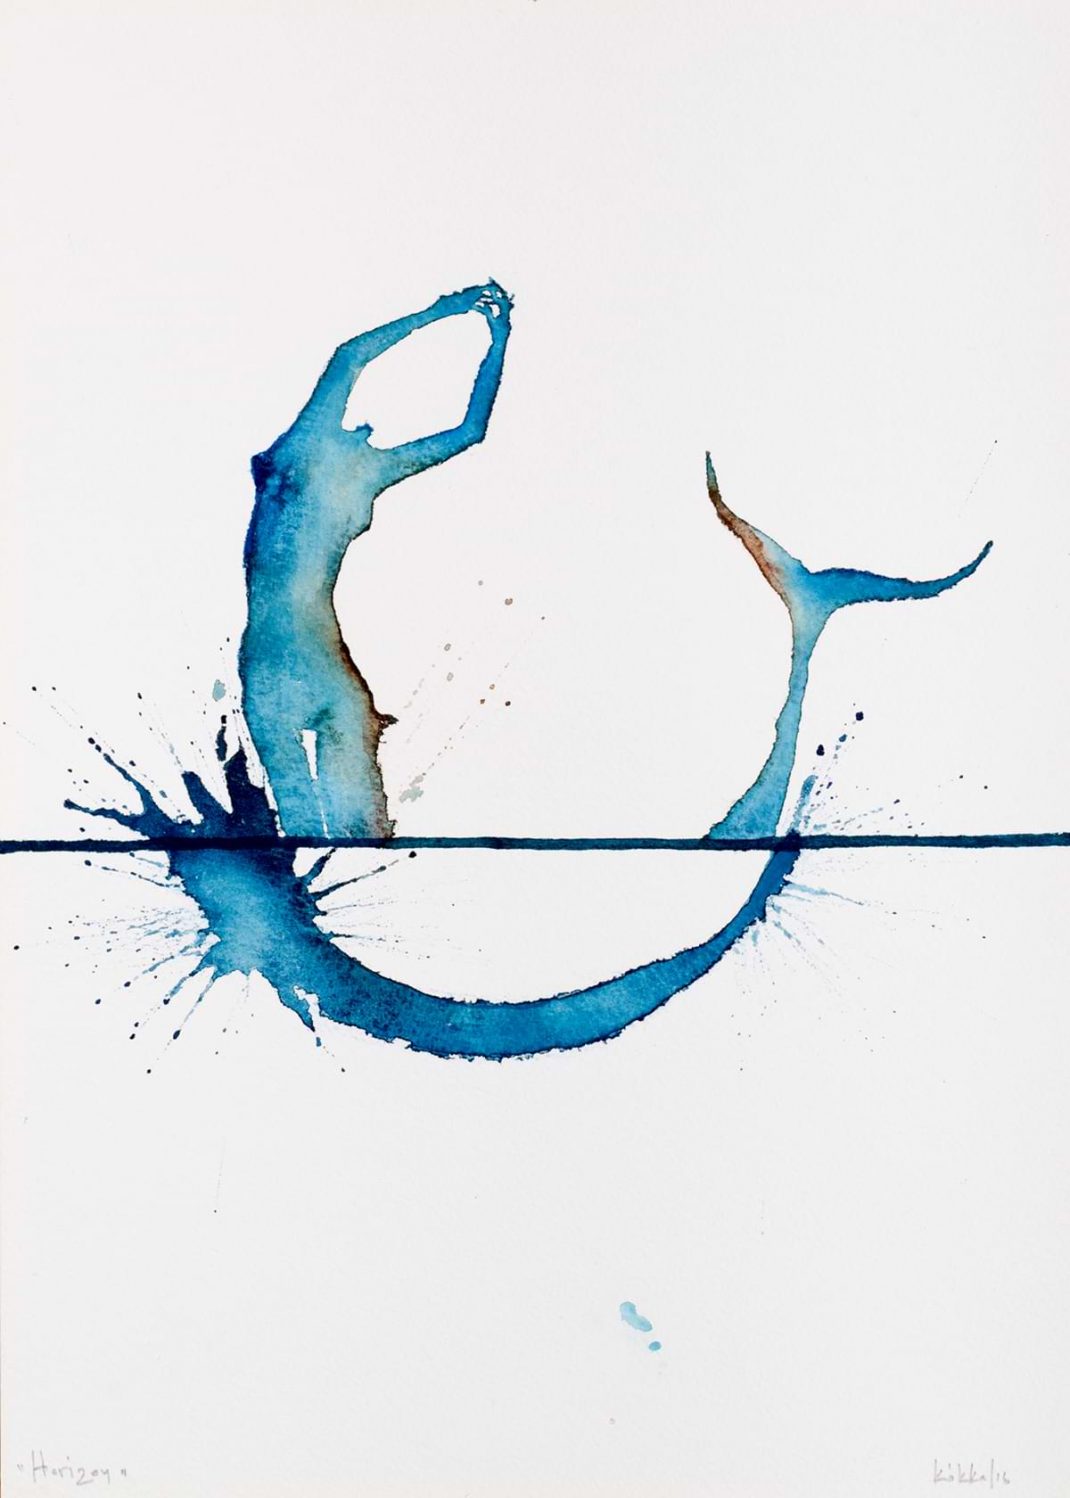 Εργο ζωγραφικής του Νίκου Κόκκαλη. Ακουαρέλλα, 25,5Χ35,5 Γοργόνα σε απλή μορφή με γαλάζιο χρώμα